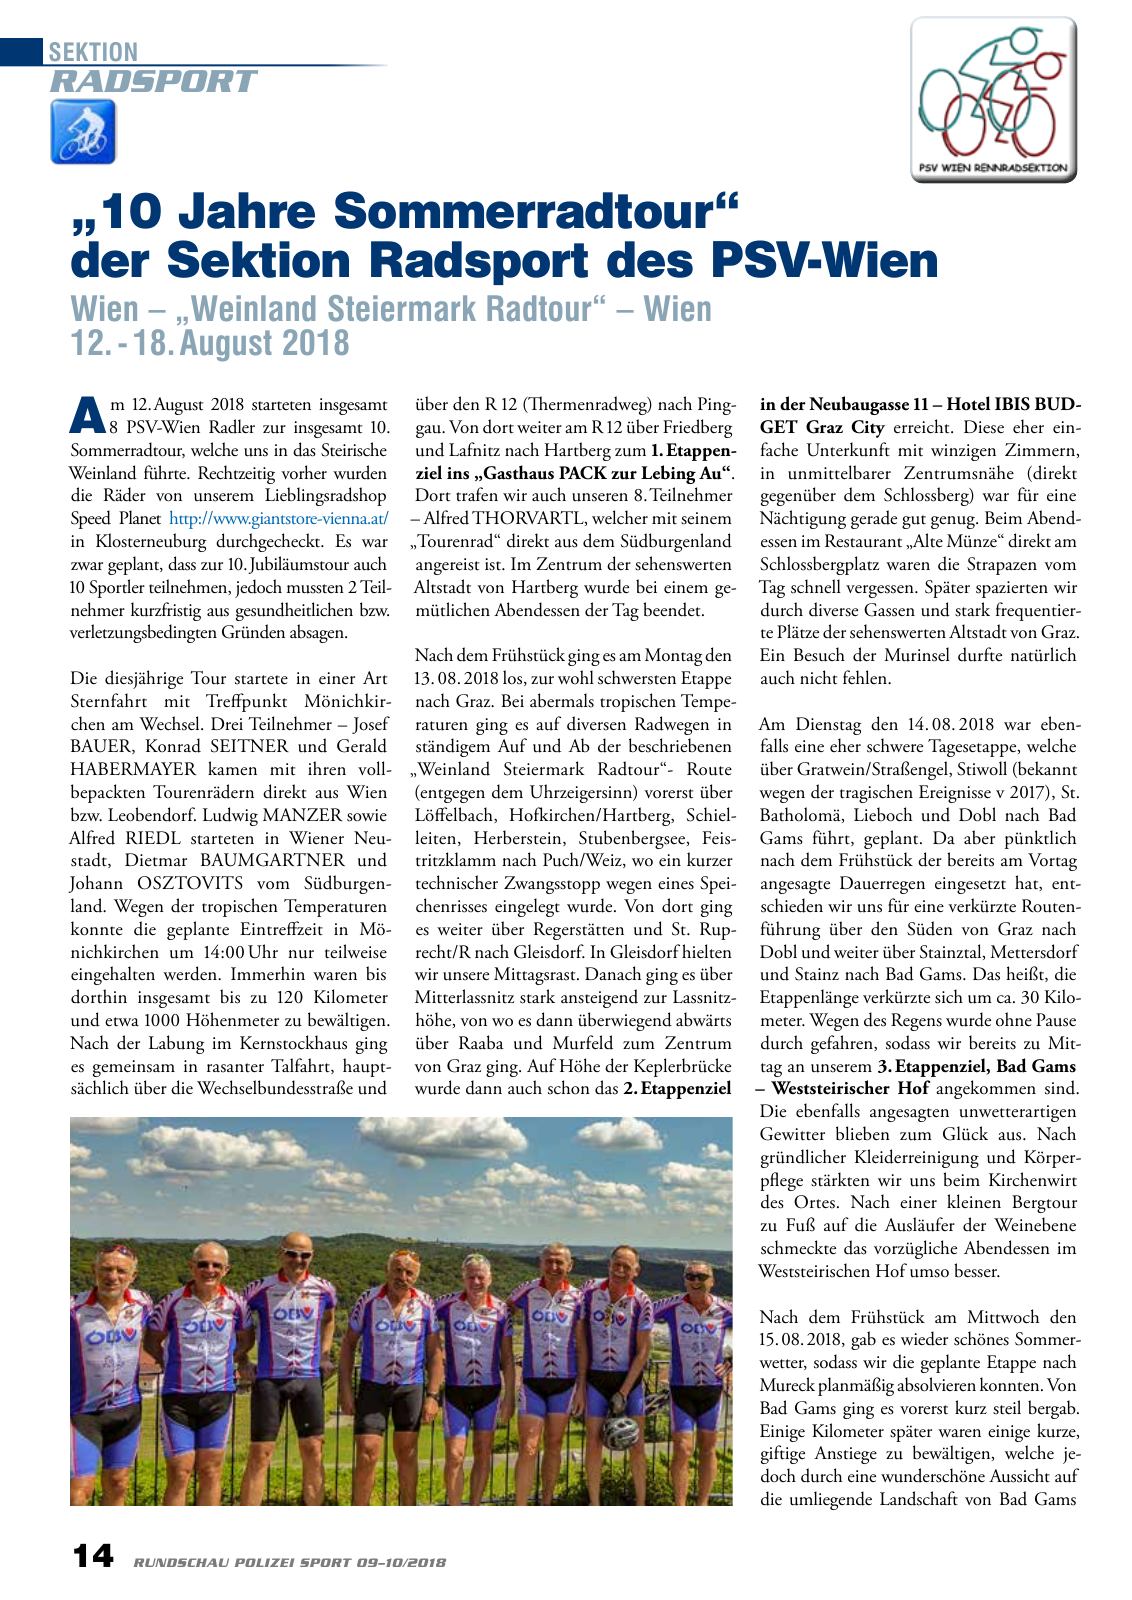 Vorschau Rundschau Polizei Sport 09-10/2018 Seite 14